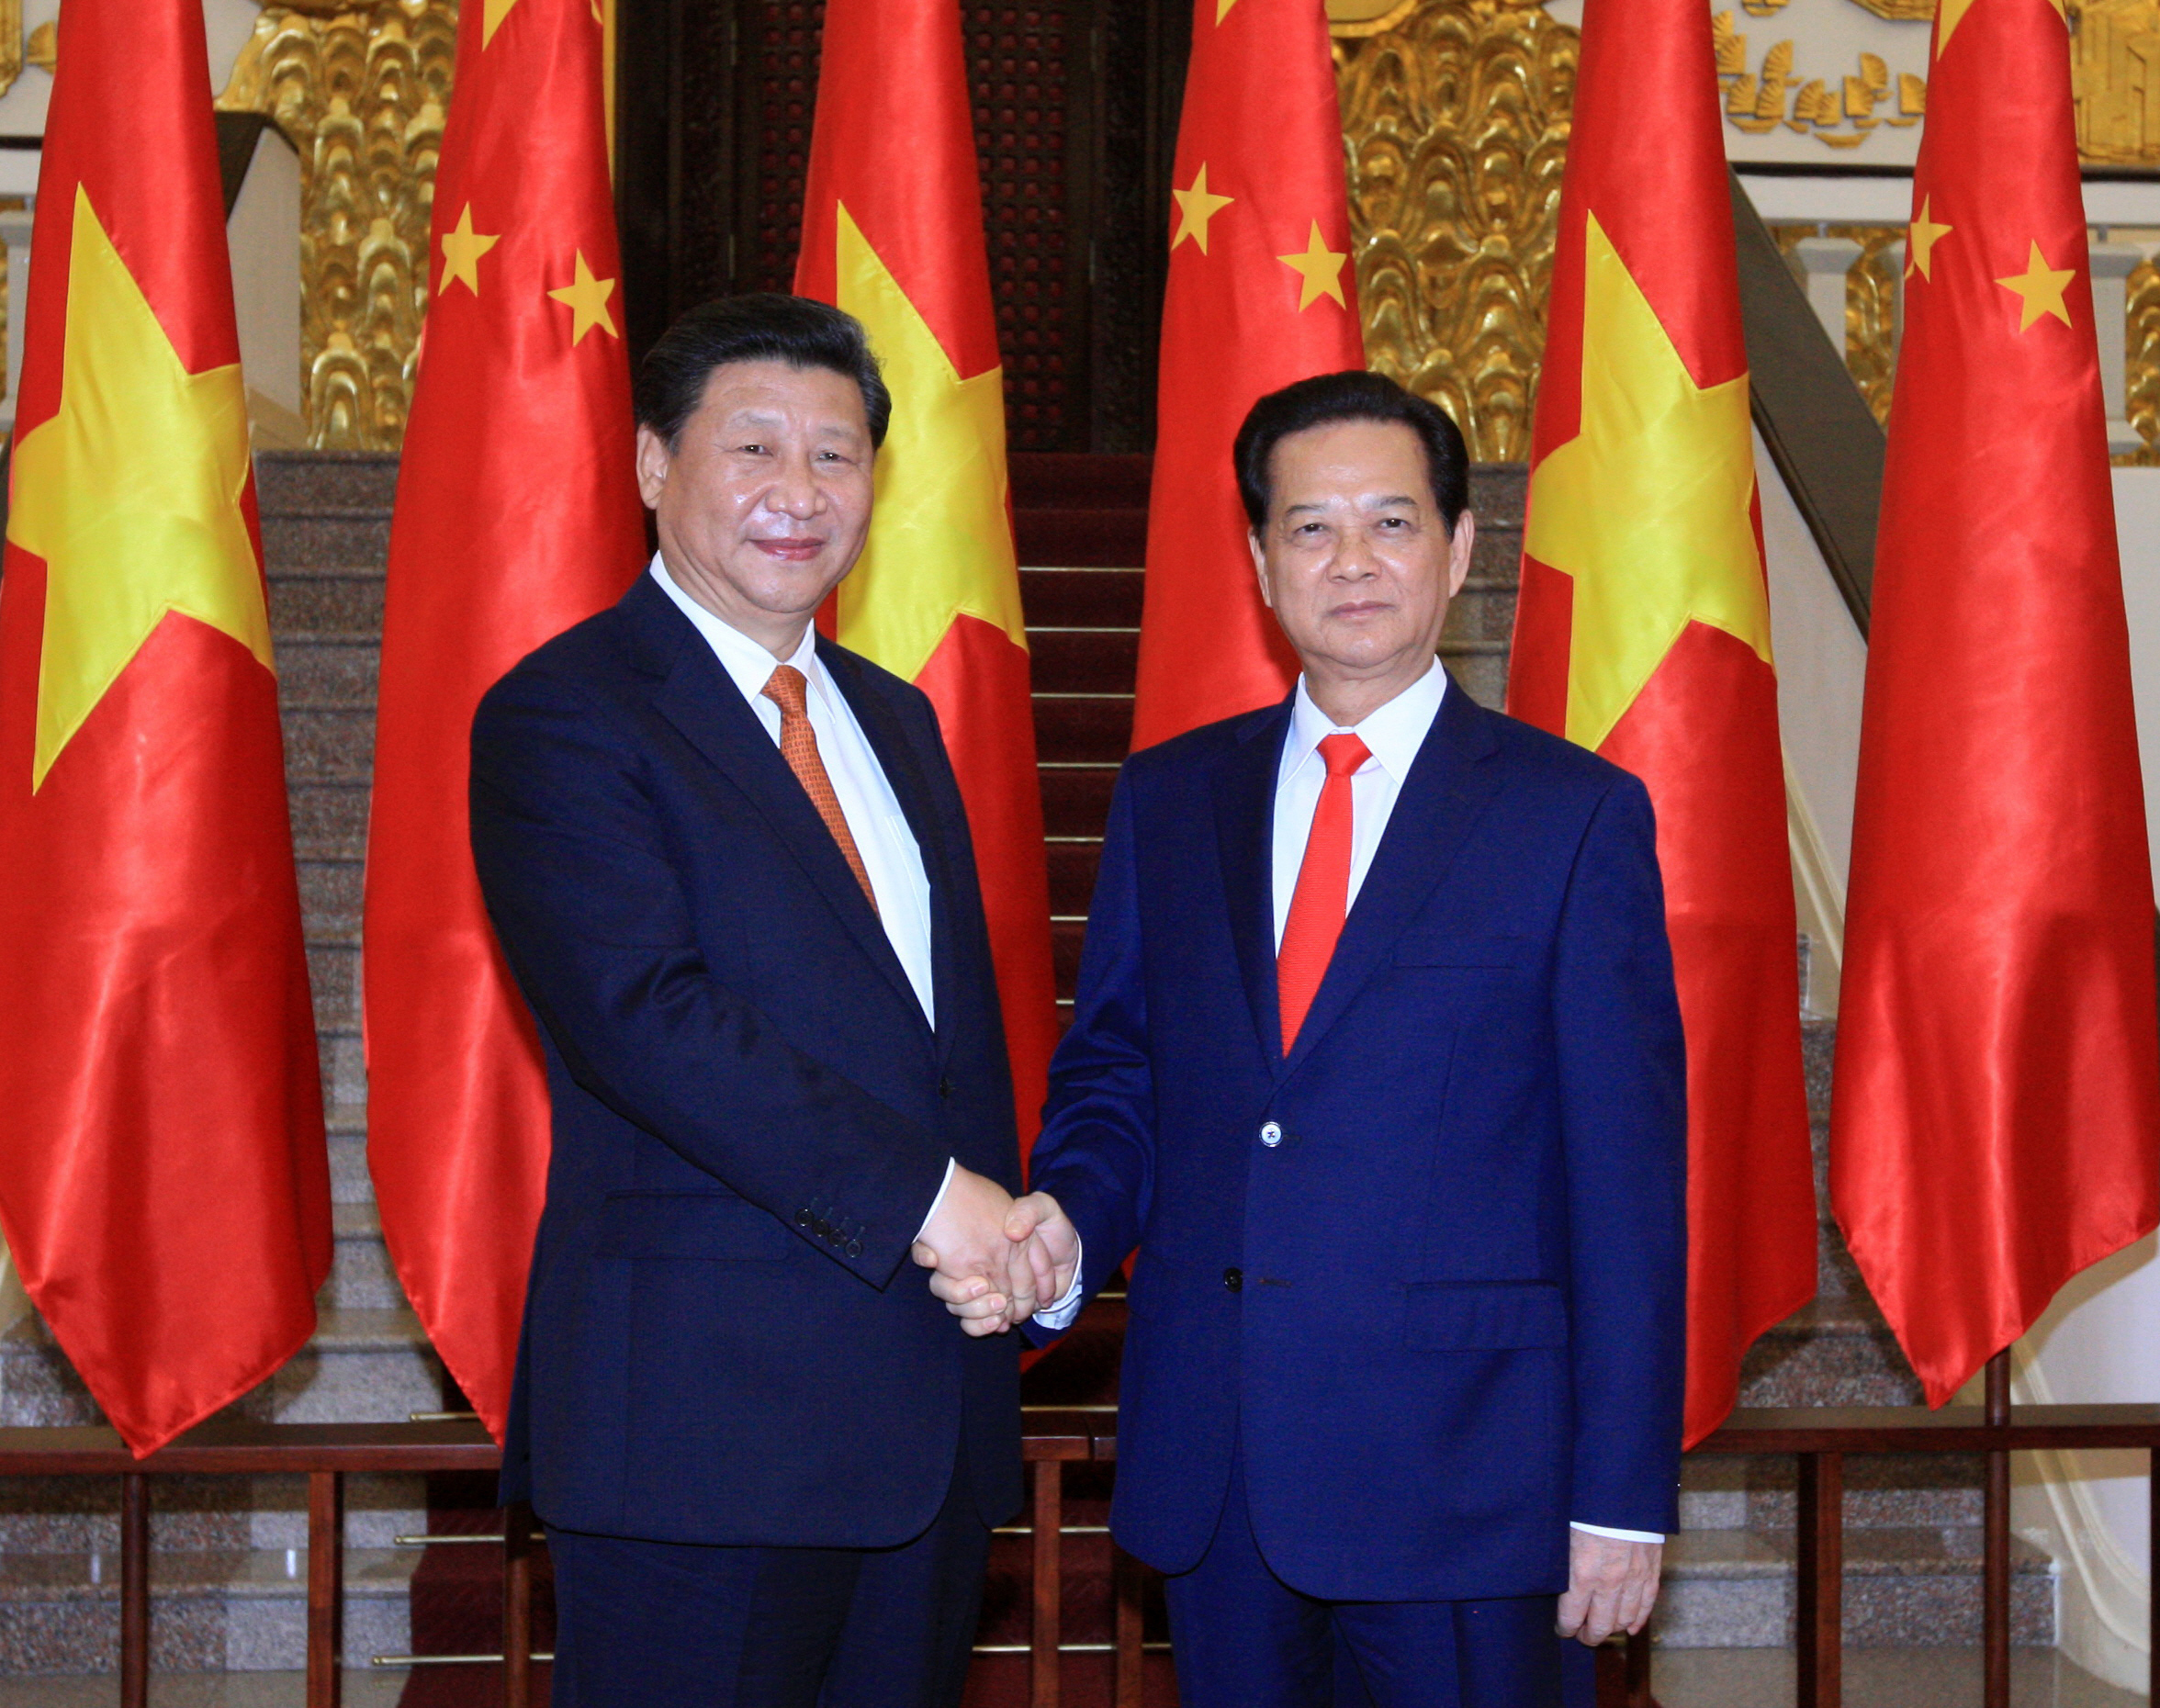 Thủ tướng Nguyễn Tấn Dũng hội kiến Tổng bí thư, Chủ tịch nước Trung Quốc Tập Cận Bình - Ảnh: Ngọc Thắng